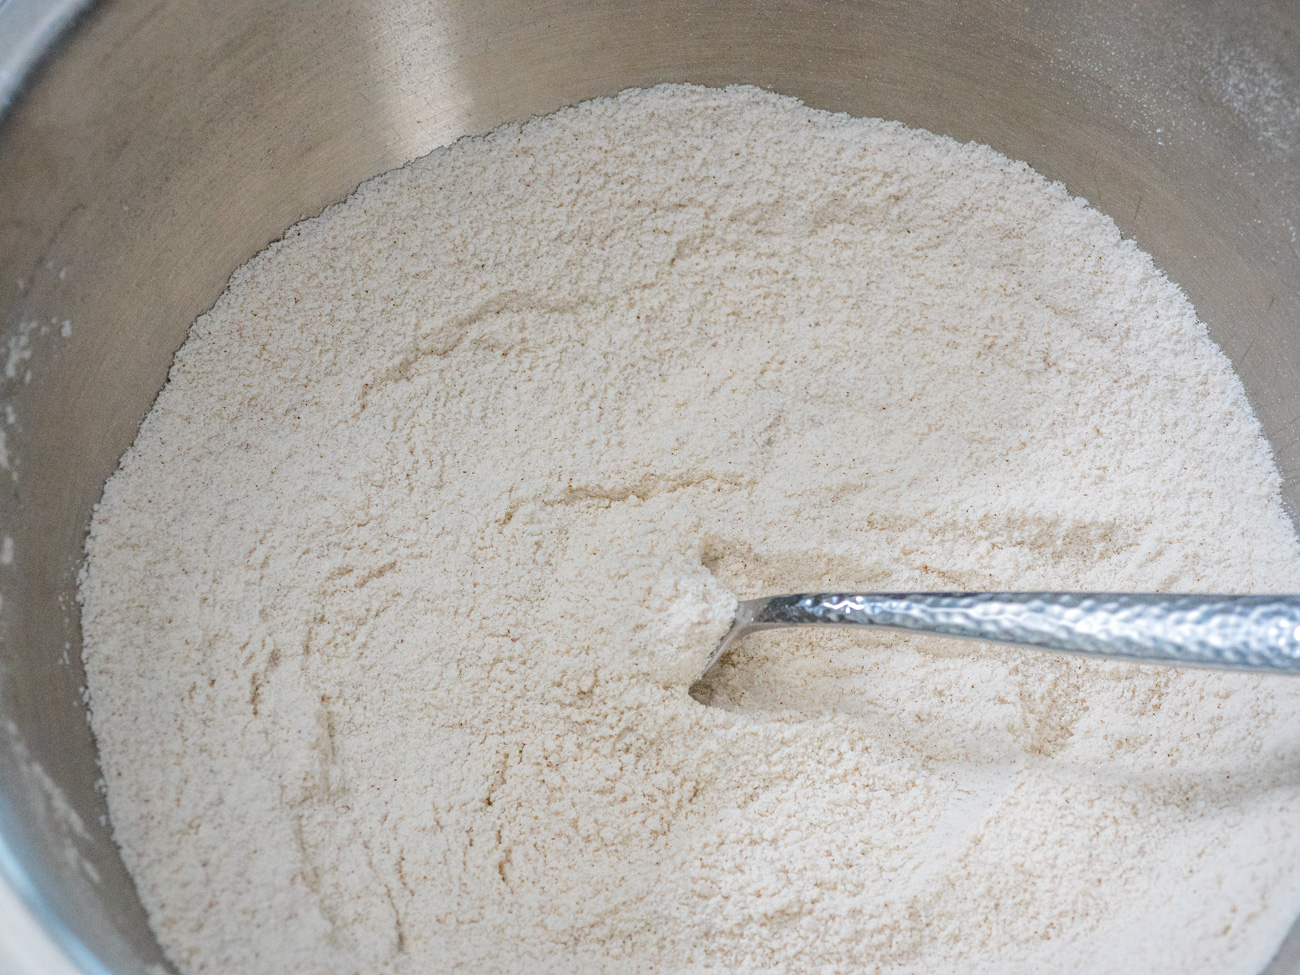 Dans un grand bol, fouetter ensemble la farine, le sucre, la levure chimique, le bicarbonate de soude, le sel et la cannelle.